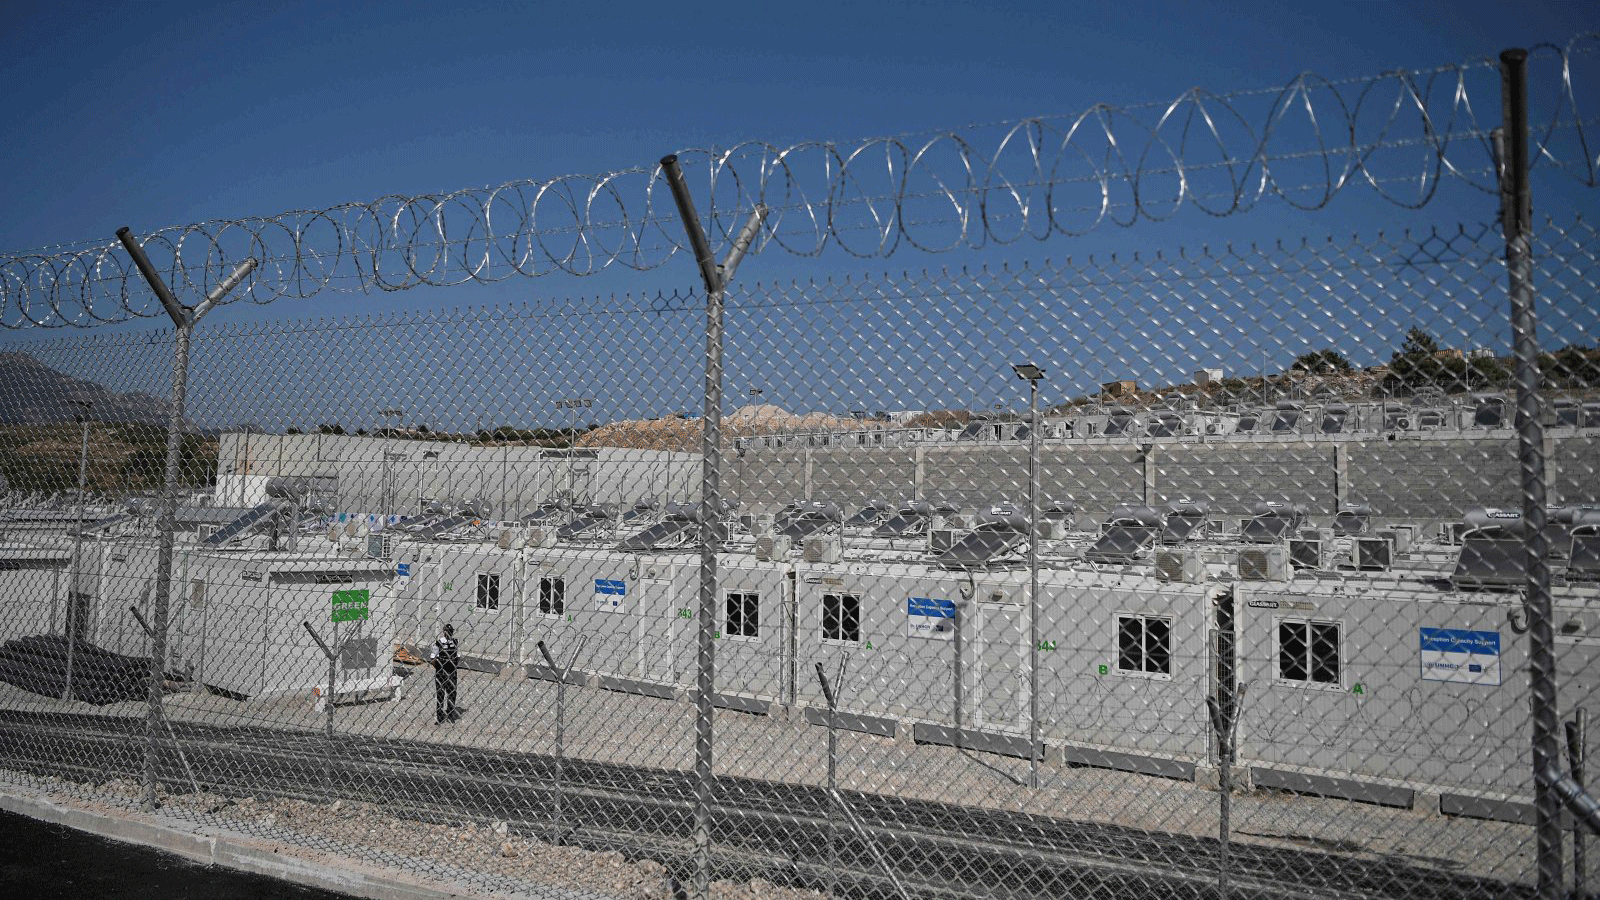 مركز استقبال المهاجرين الجديد الذي تم بناؤه بالقرب من فاثي، في جزيرة ساموس بشرق بحر إيجه/ اليونان. 18 أيلول/ سبتمبر 2021